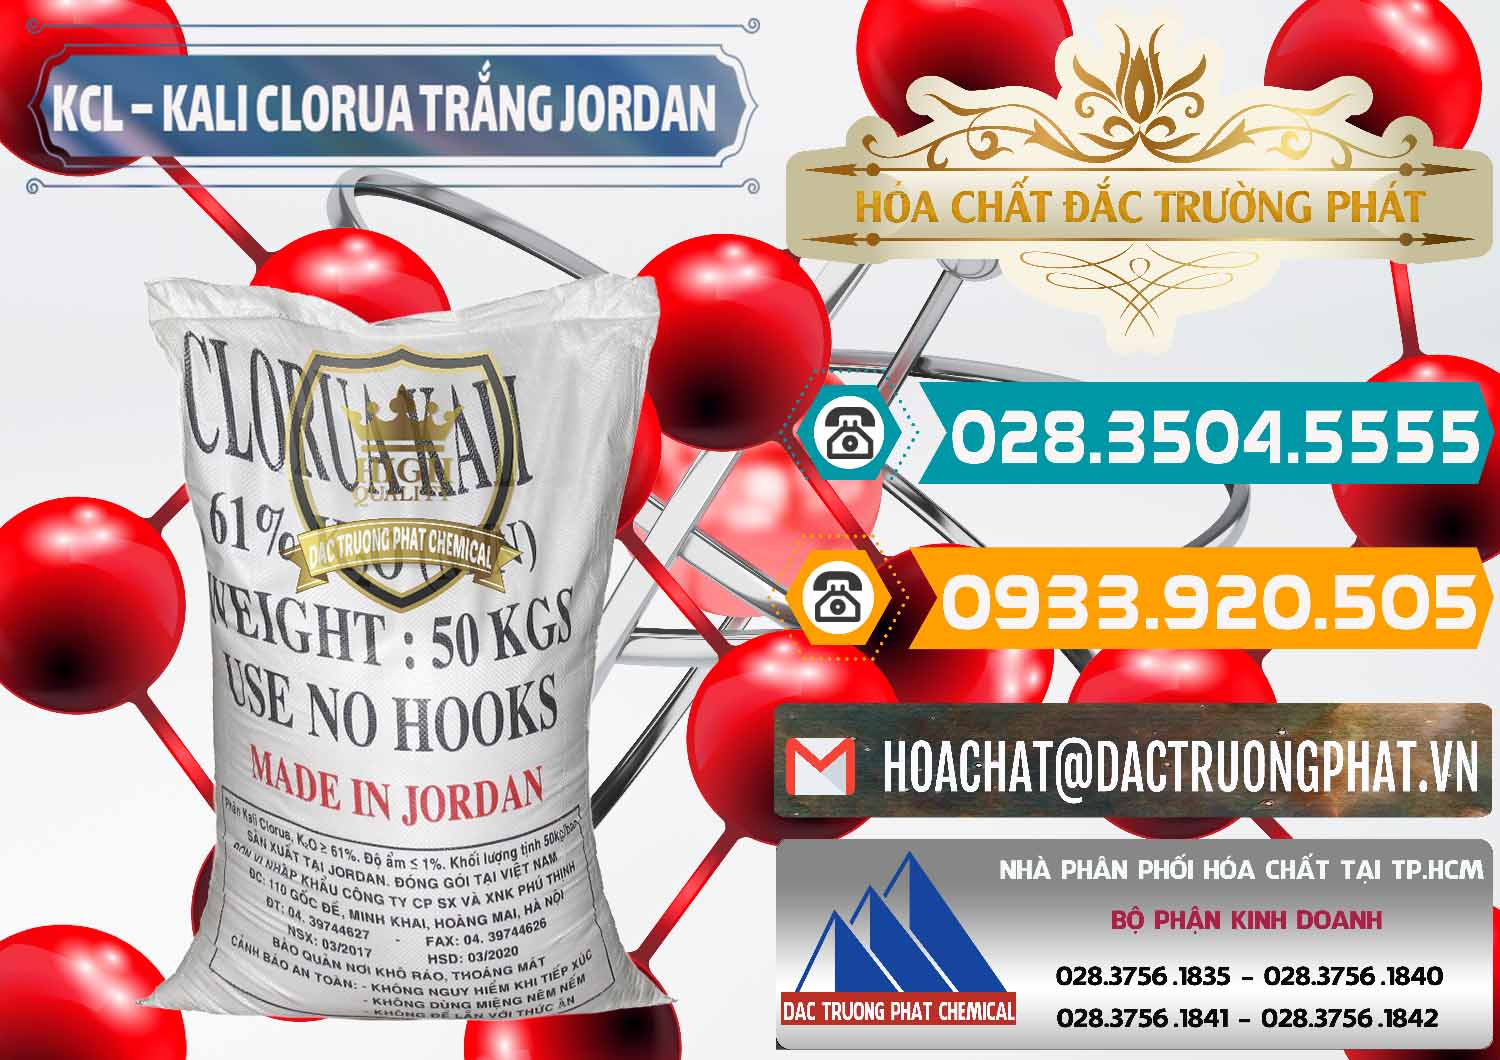 Cty chuyên cung cấp ( bán ) KCL – Kali Clorua Trắng Jordan - 0088 - Công ty chuyên bán _ phân phối hóa chất tại TP.HCM - congtyhoachat.vn